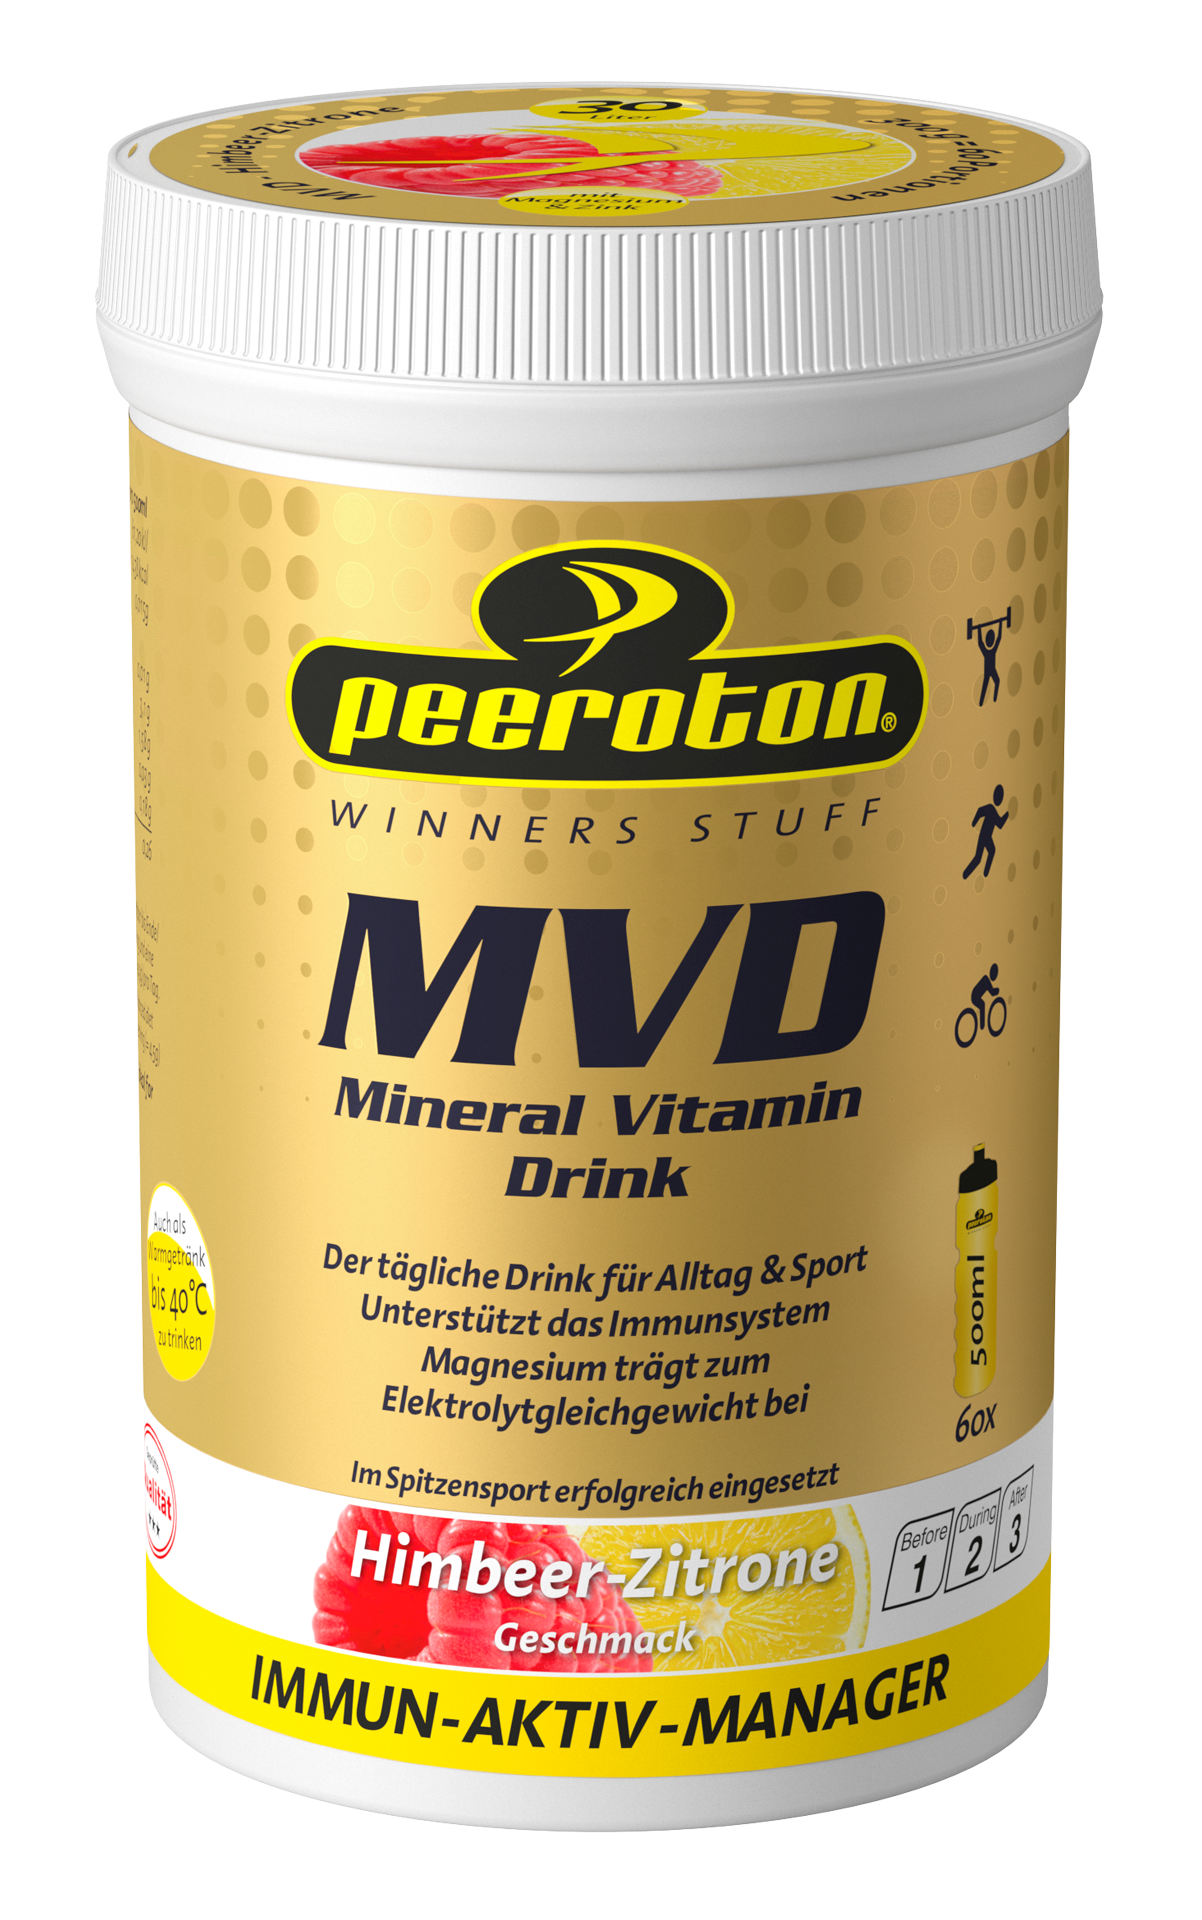 Peeroton MINERAL VITAMIN Drink Himbeer-Zitrone 300g ( für 30 Liter Getränk) - Immun Aktiv